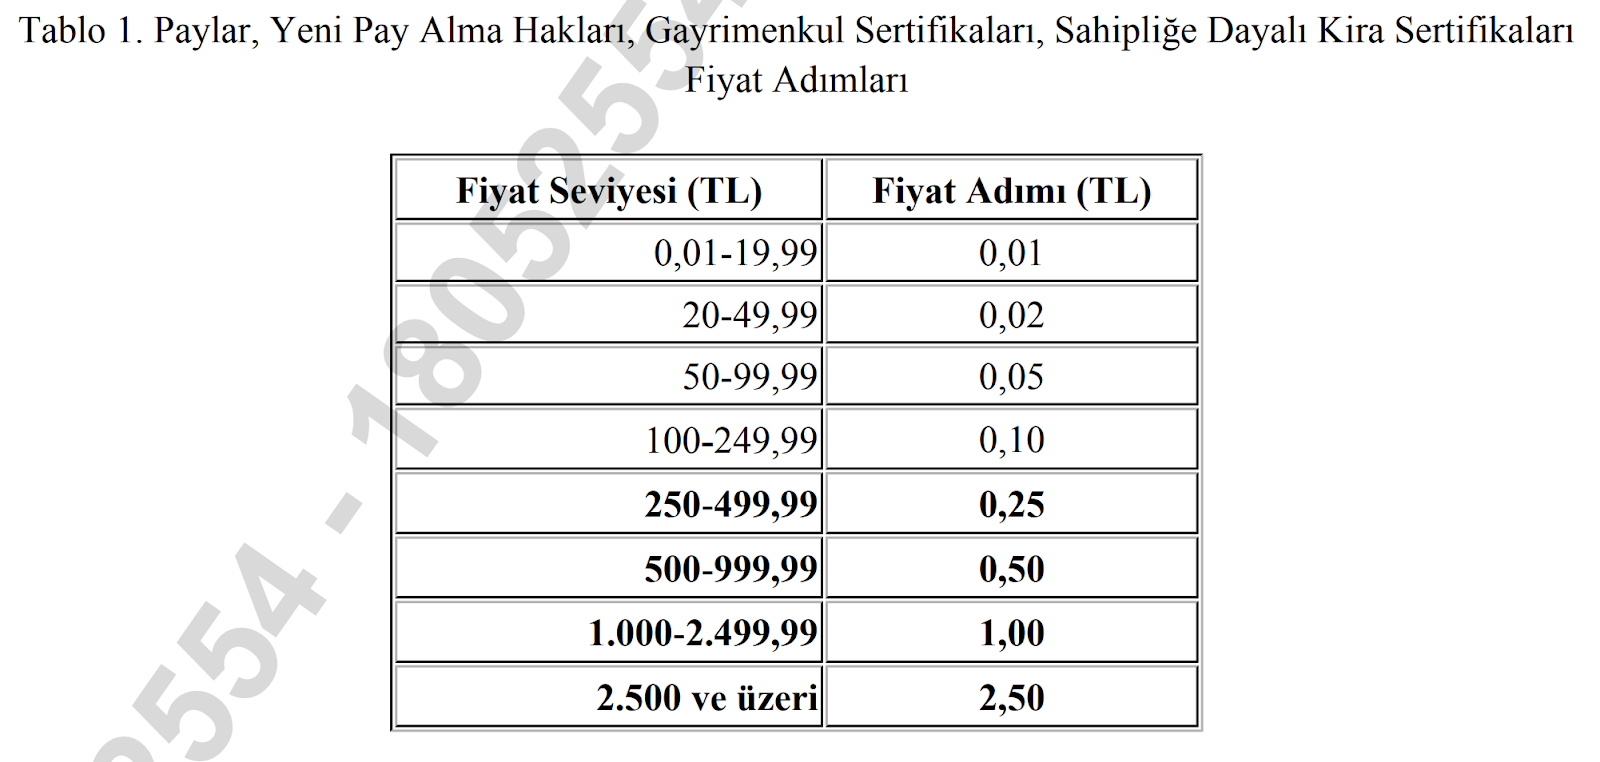 Borsa İstanbul'dan Fiyat Adımı Düzenlemesi